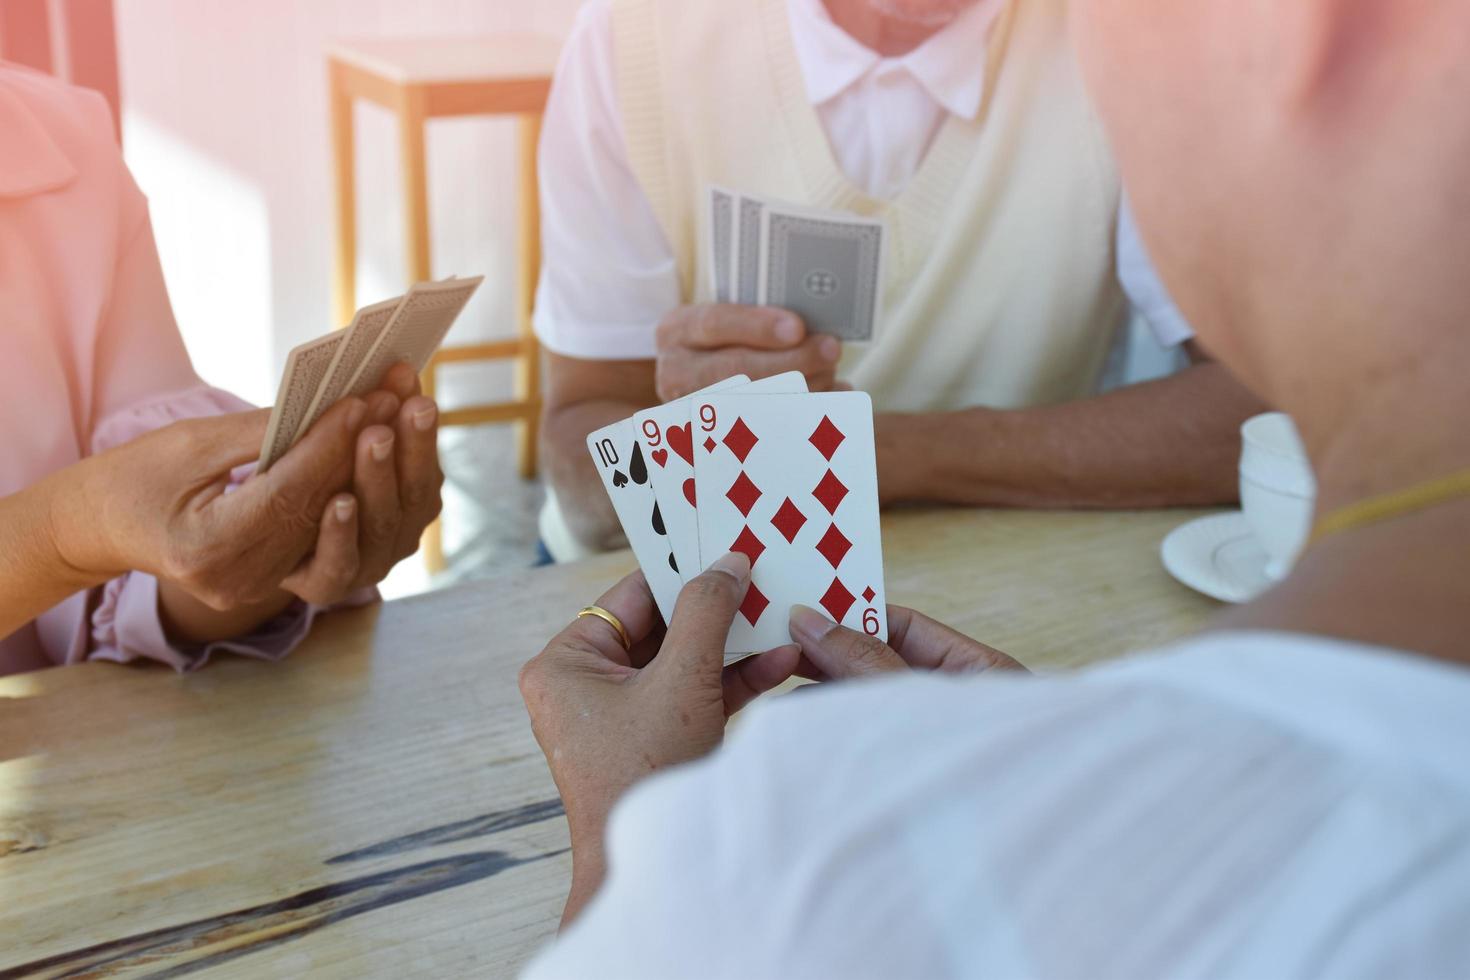 jogo de cartas de idosos em casa em seus tempos livres, recreação e felicidade do conceito de idosos. foto